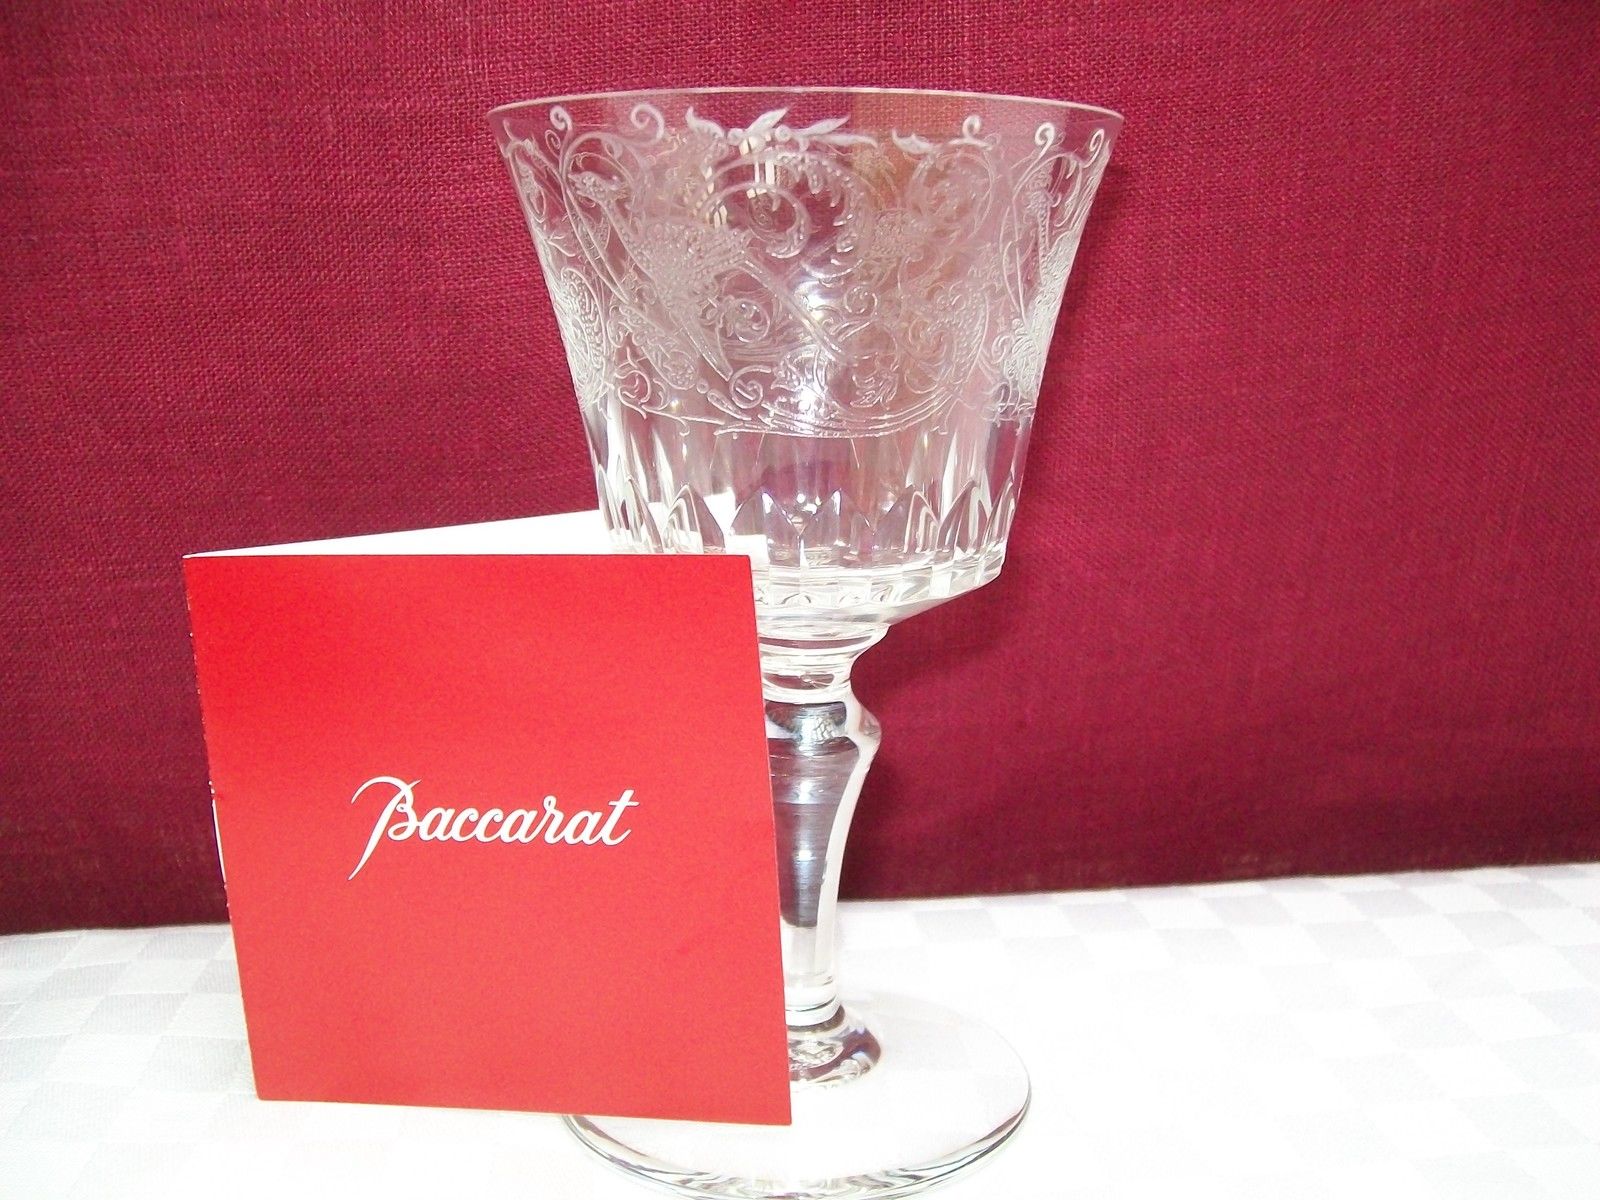 バカラ(BACCARAT)グラス ワインに合うクリスタルのご紹介♪ | 古き旅